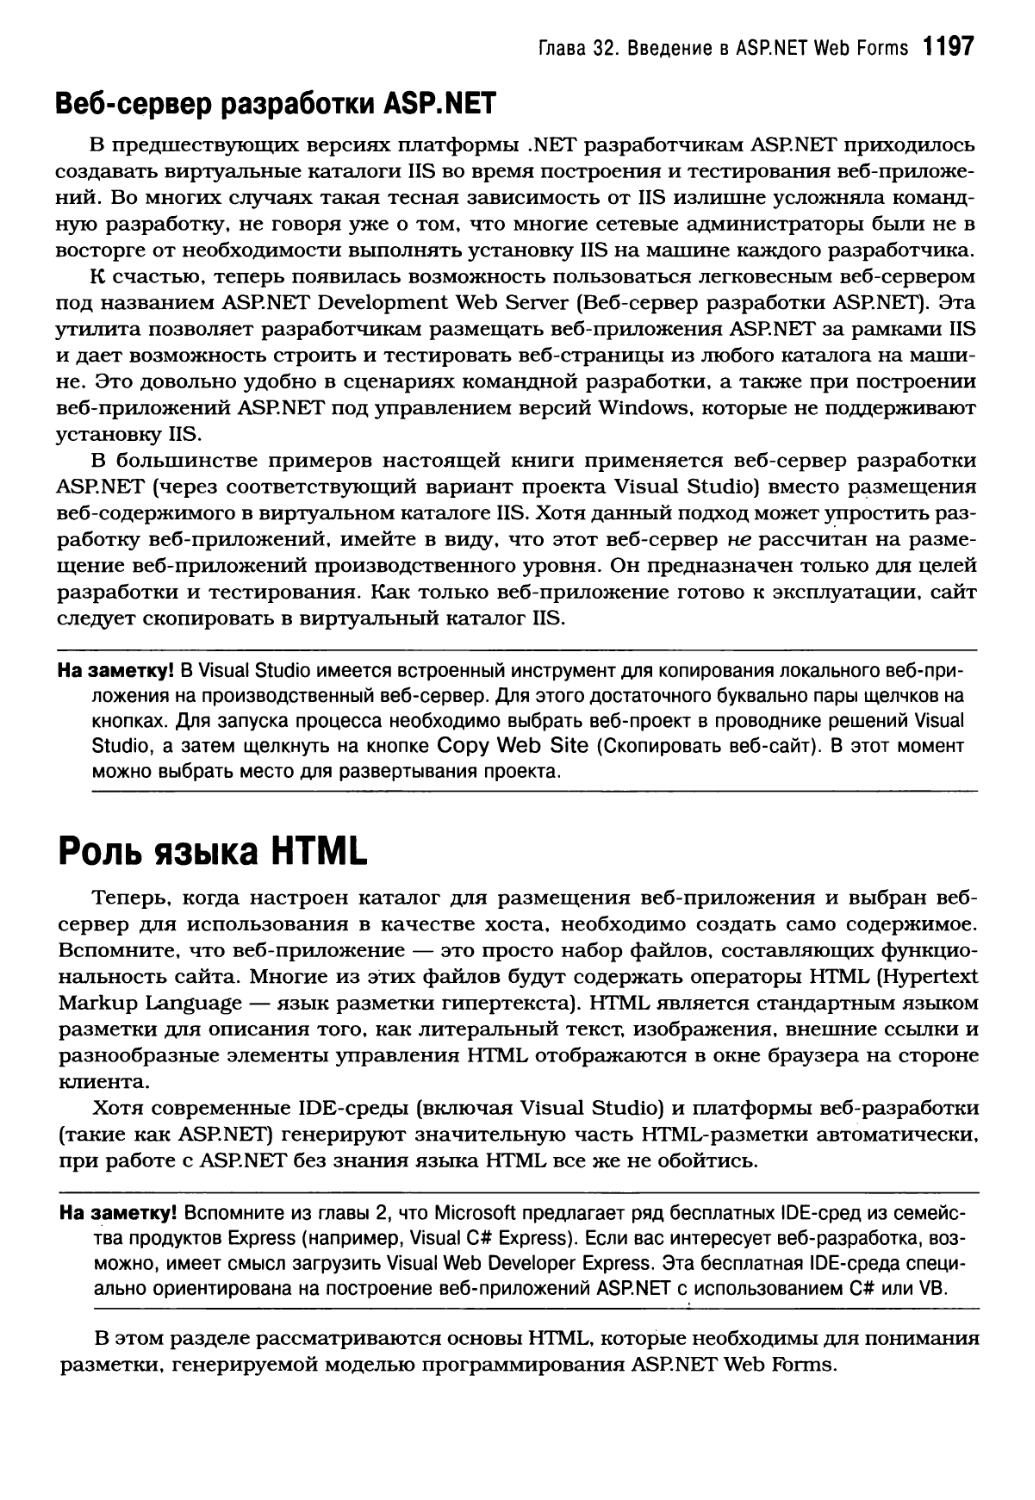 Веб-сервер разработки ASP.NET
Роль языка HTML